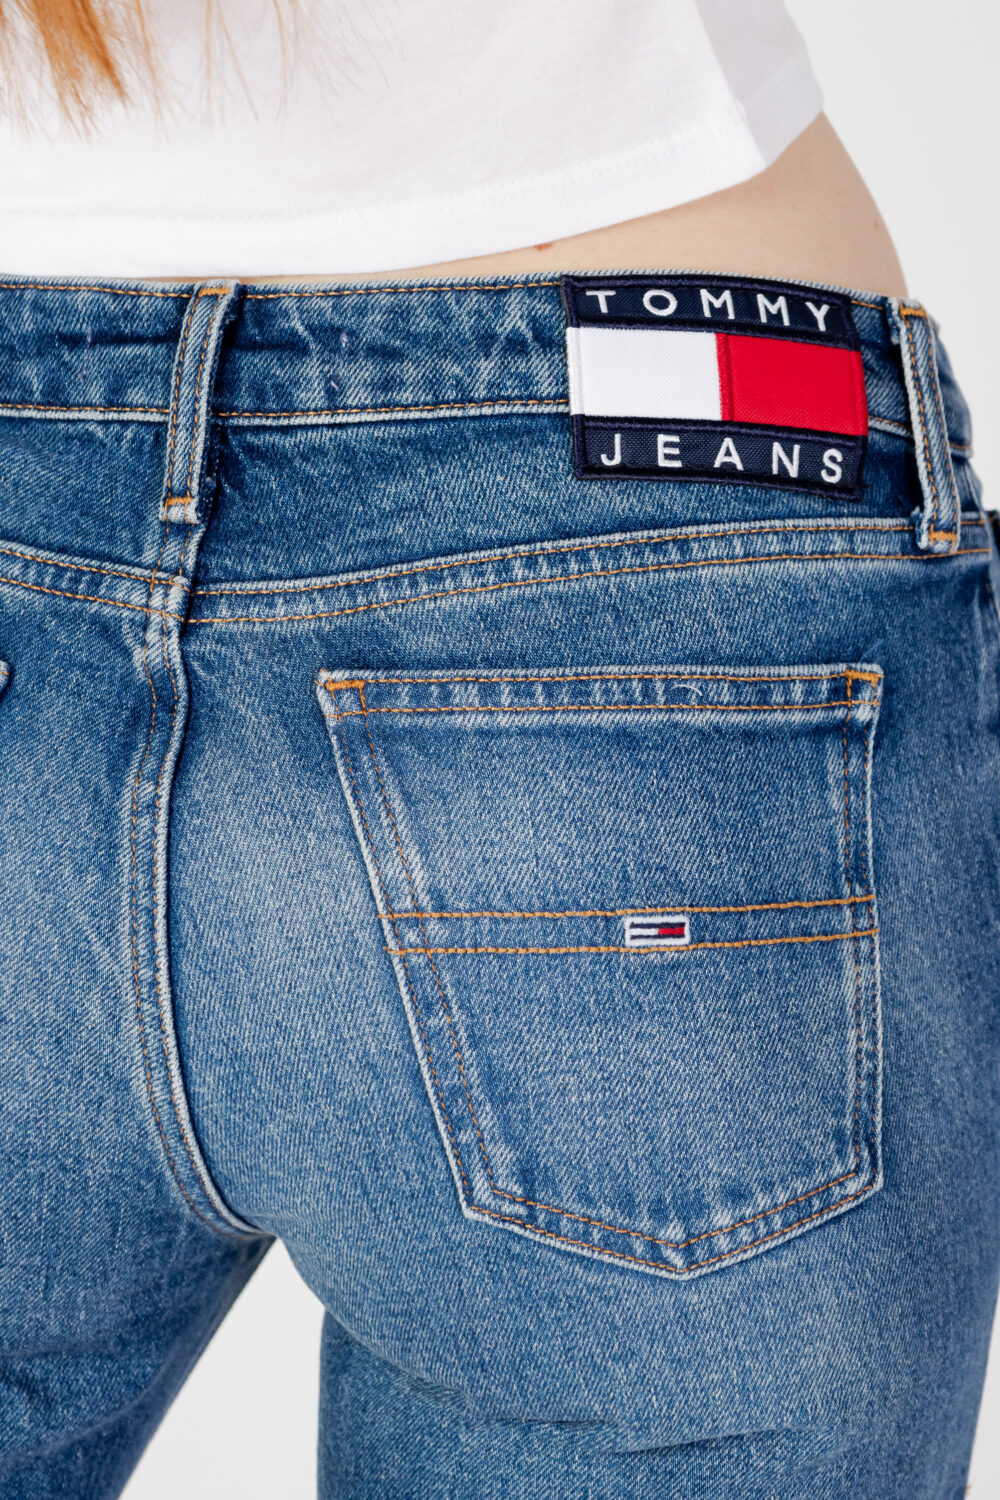 Jeans larghi Tommy Hilfiger Jeans sophie lr flr cg6159 Denim - Foto 4